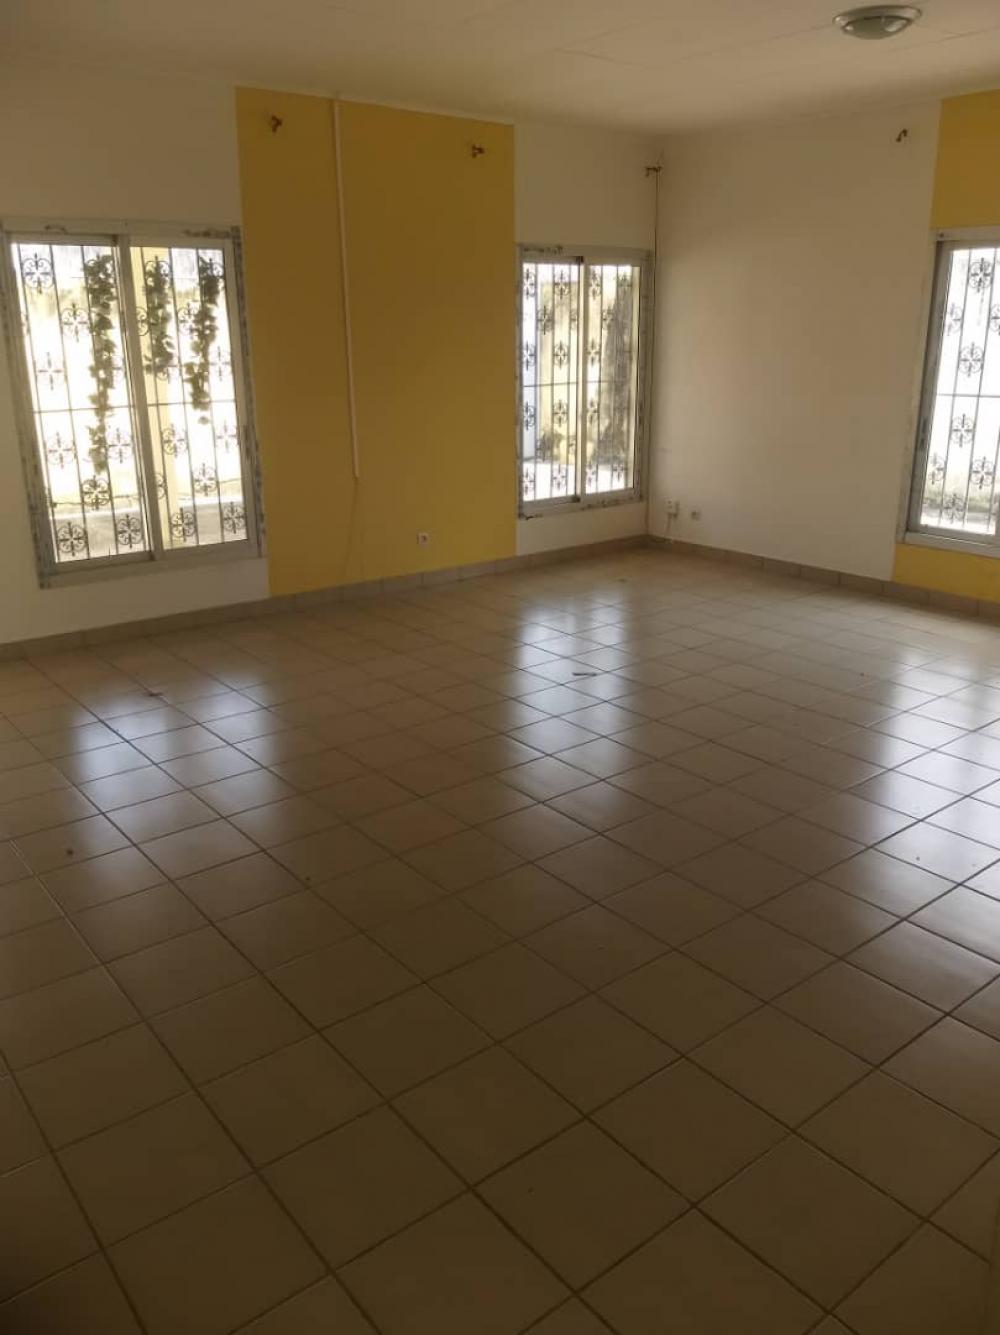 Appartement 3 chambres à louer à Libreville, Okala. Prix: 400 000 FcfaPhoto Annonce Gabonhome 0